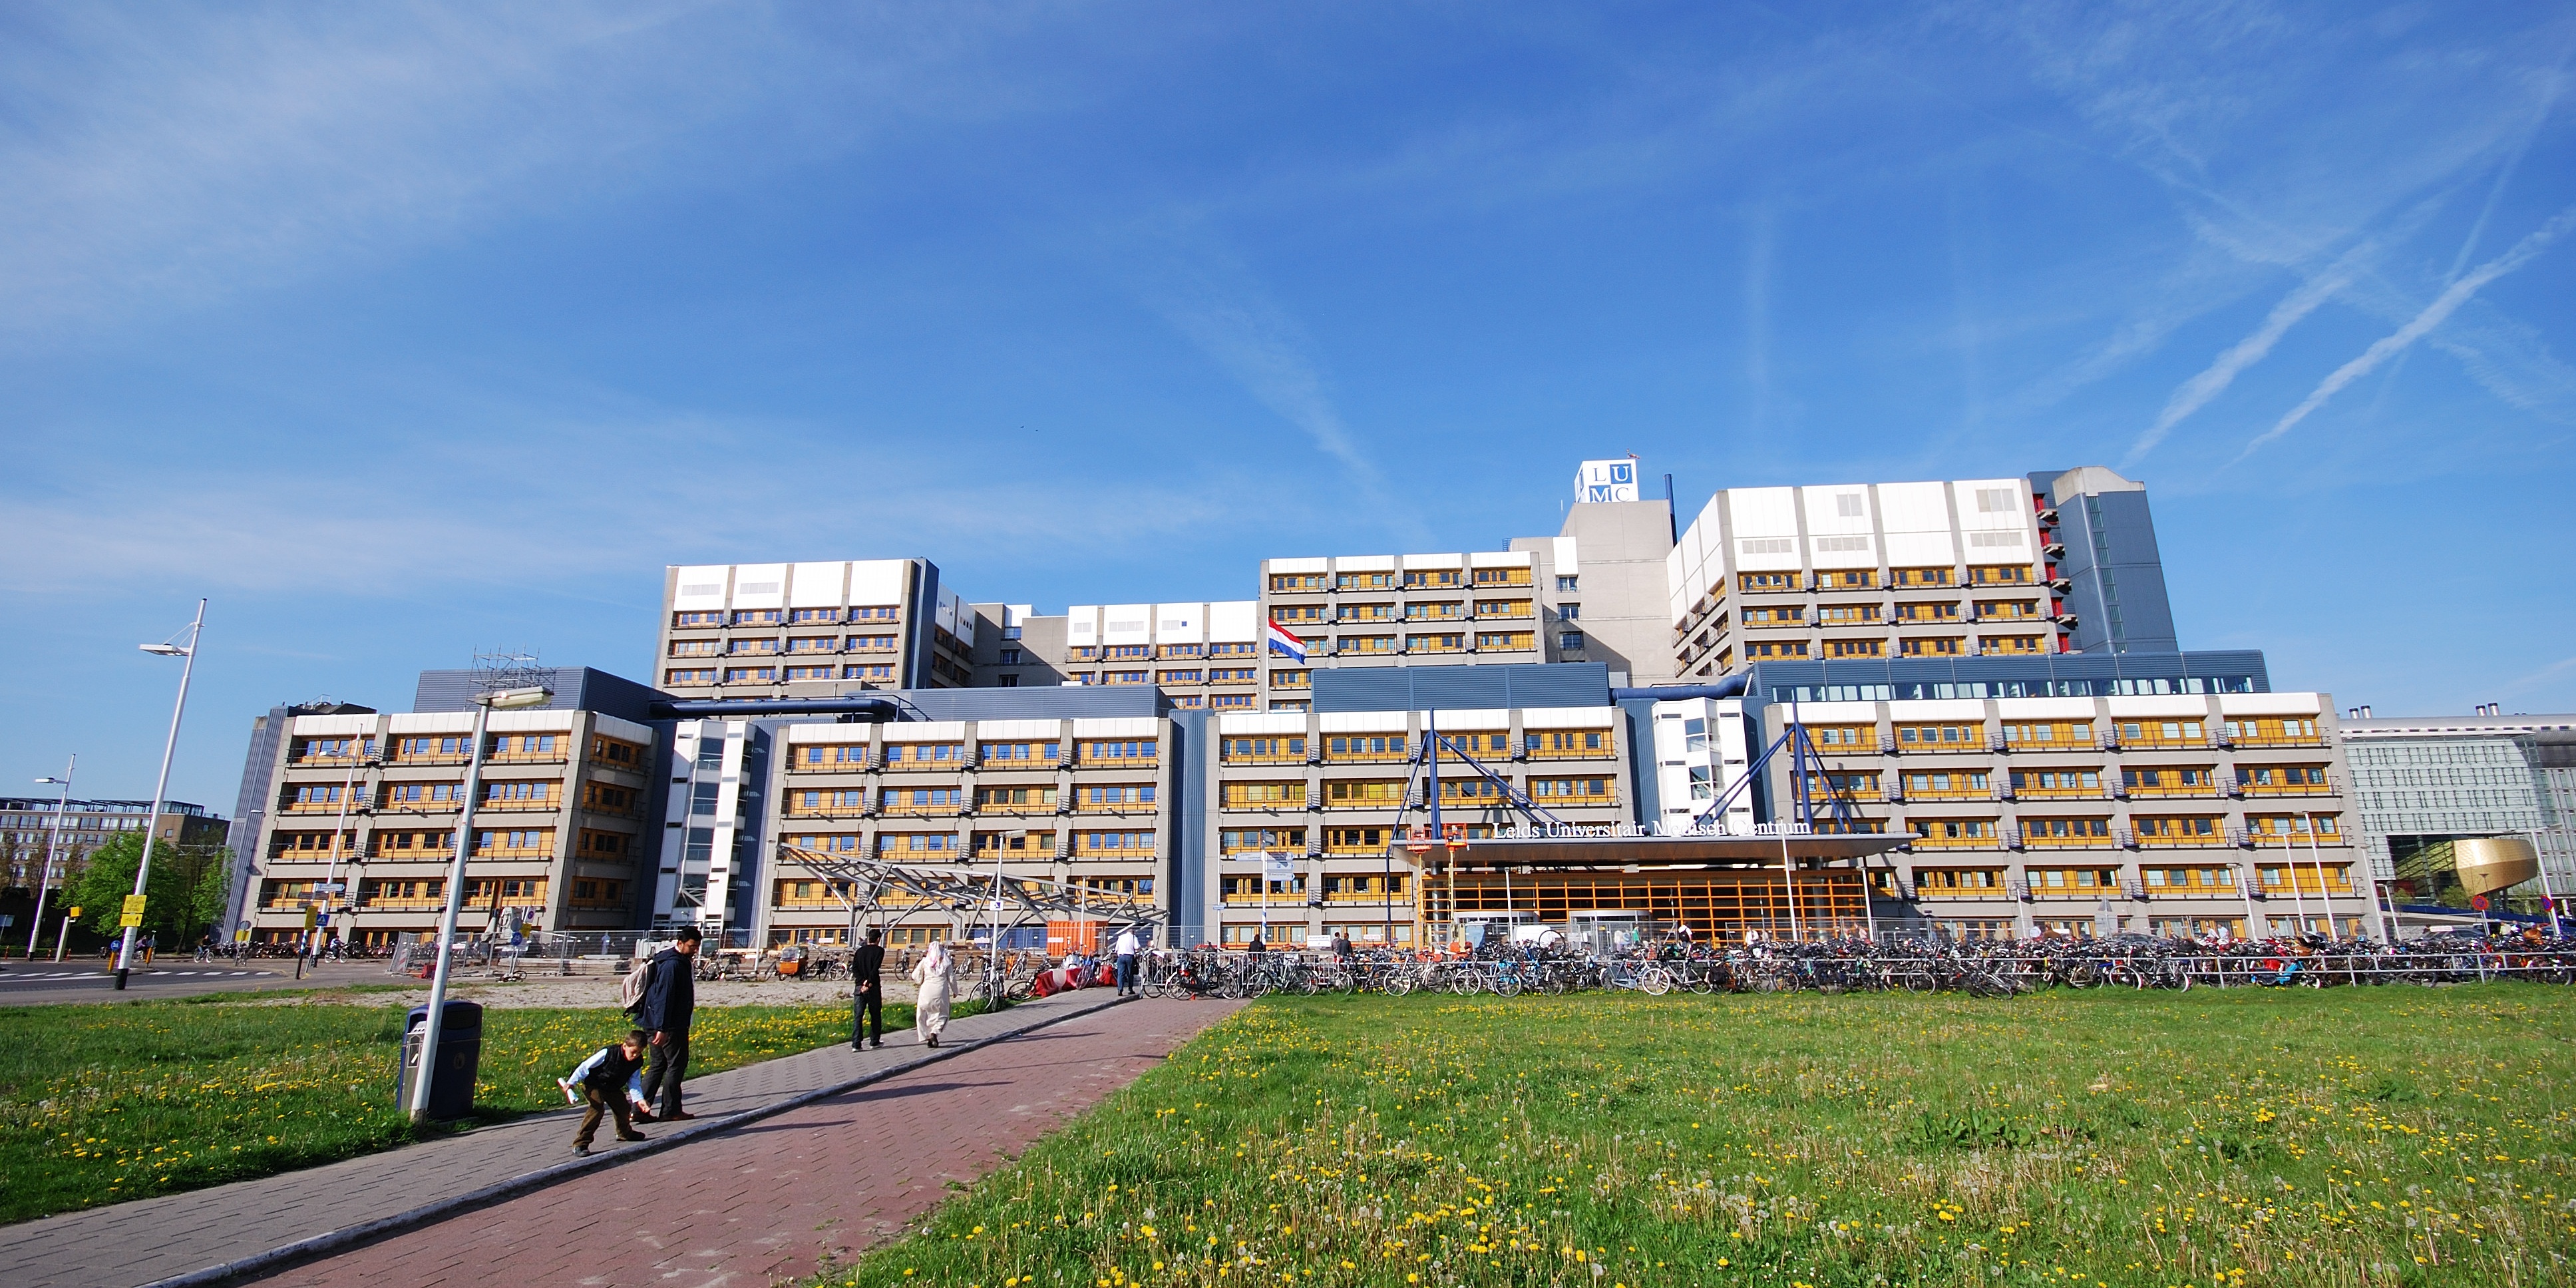 Leiden University Medical Center - Wikipedia